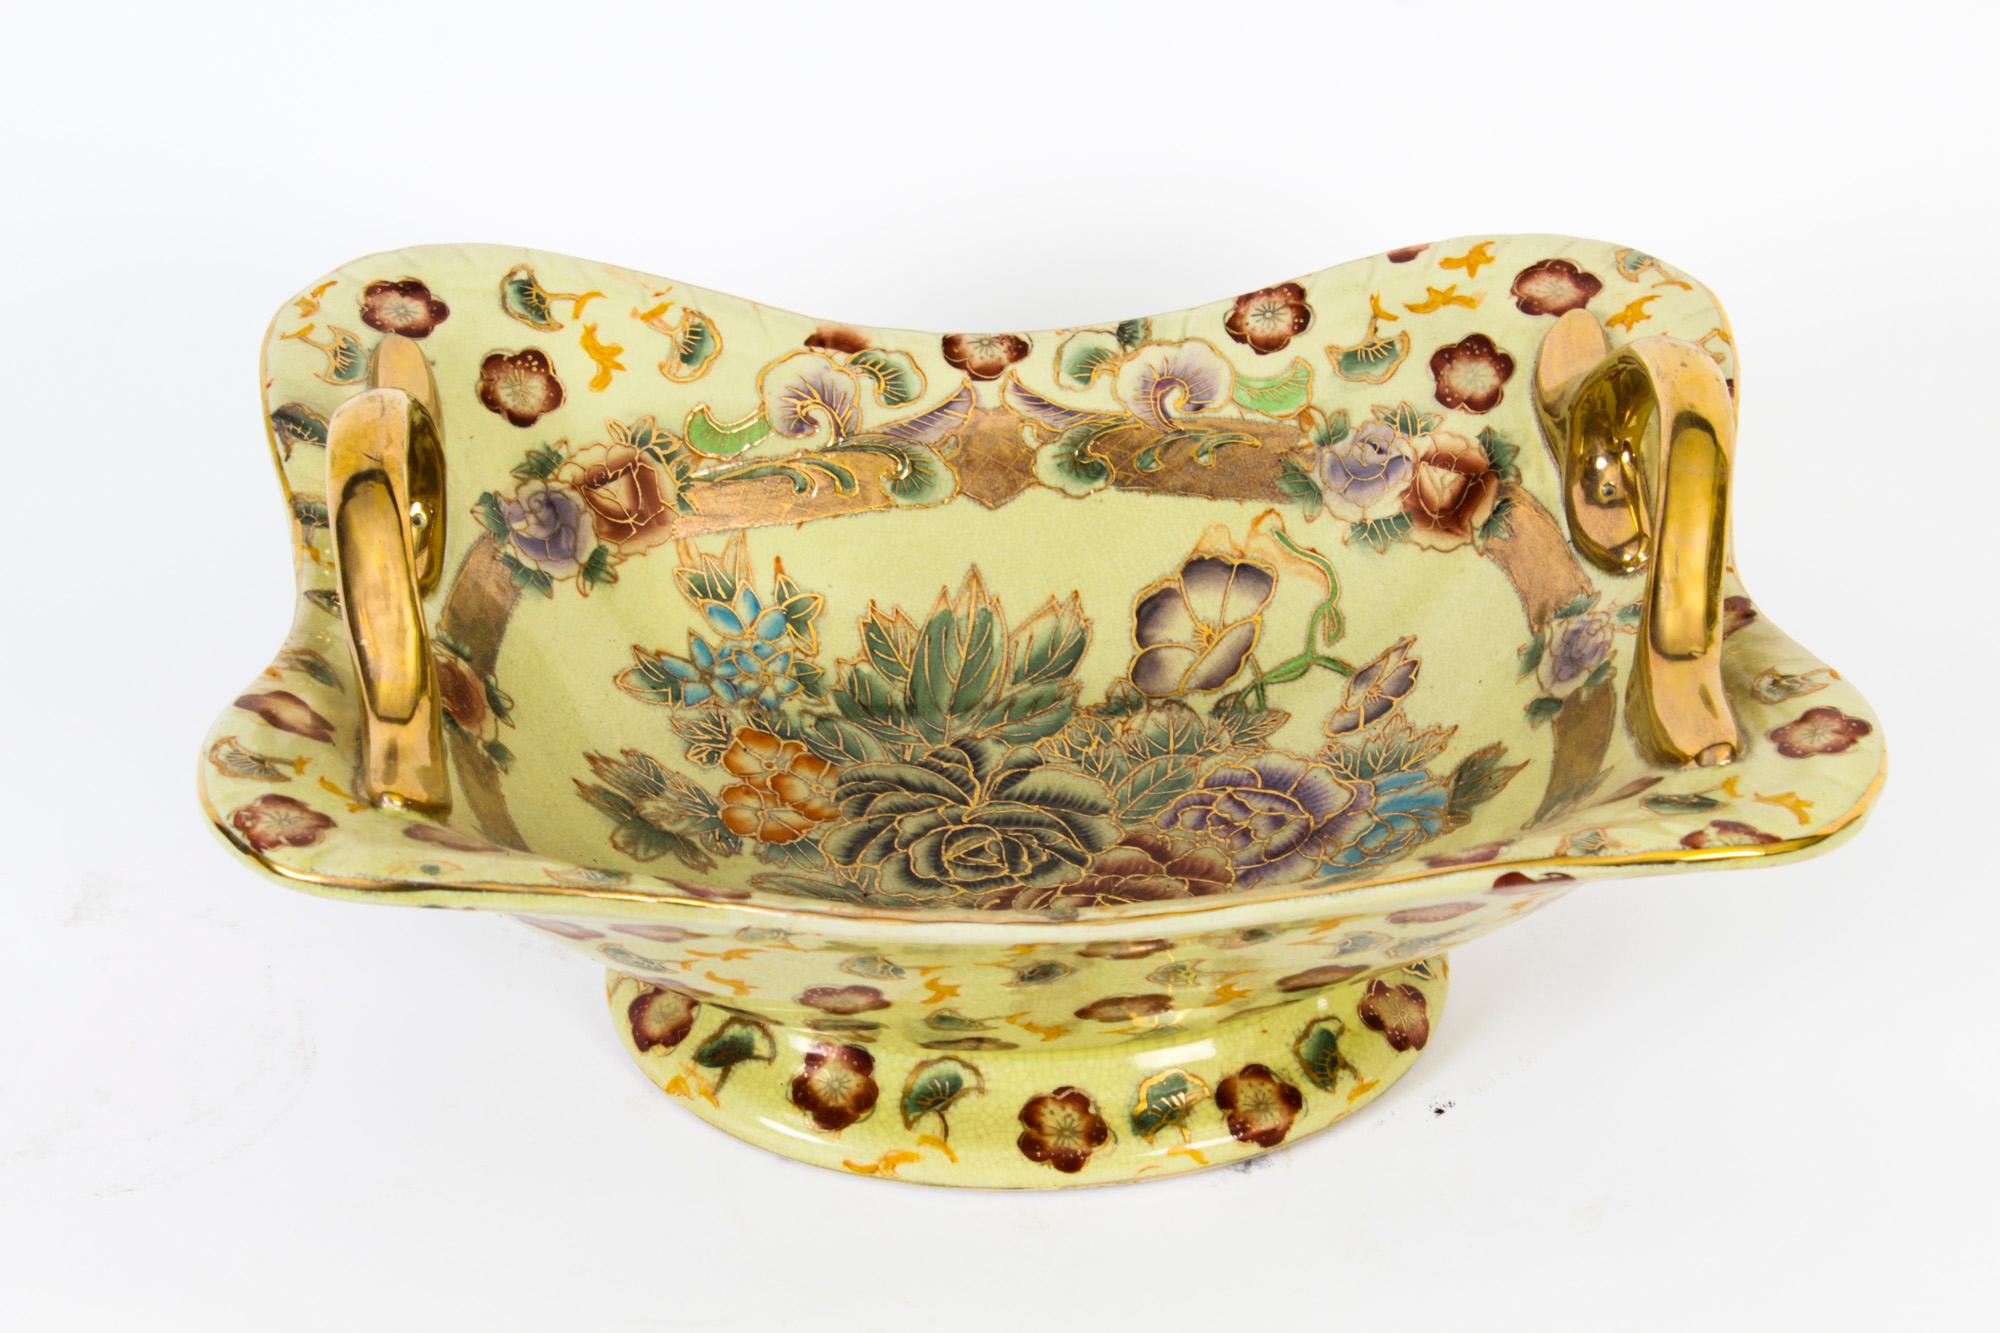 Dies ist eine schöne Porzellanschale aus der Mitte des 20. Jahrhunderts.
 
Die ovale Schale hat zwei vergoldete Henkel und ist mit einem cremefarbenen Grund und bunten Rosen mit vergoldeten Highlights bemalt.
 
Erweitern Sie Ihre Sammlung mit